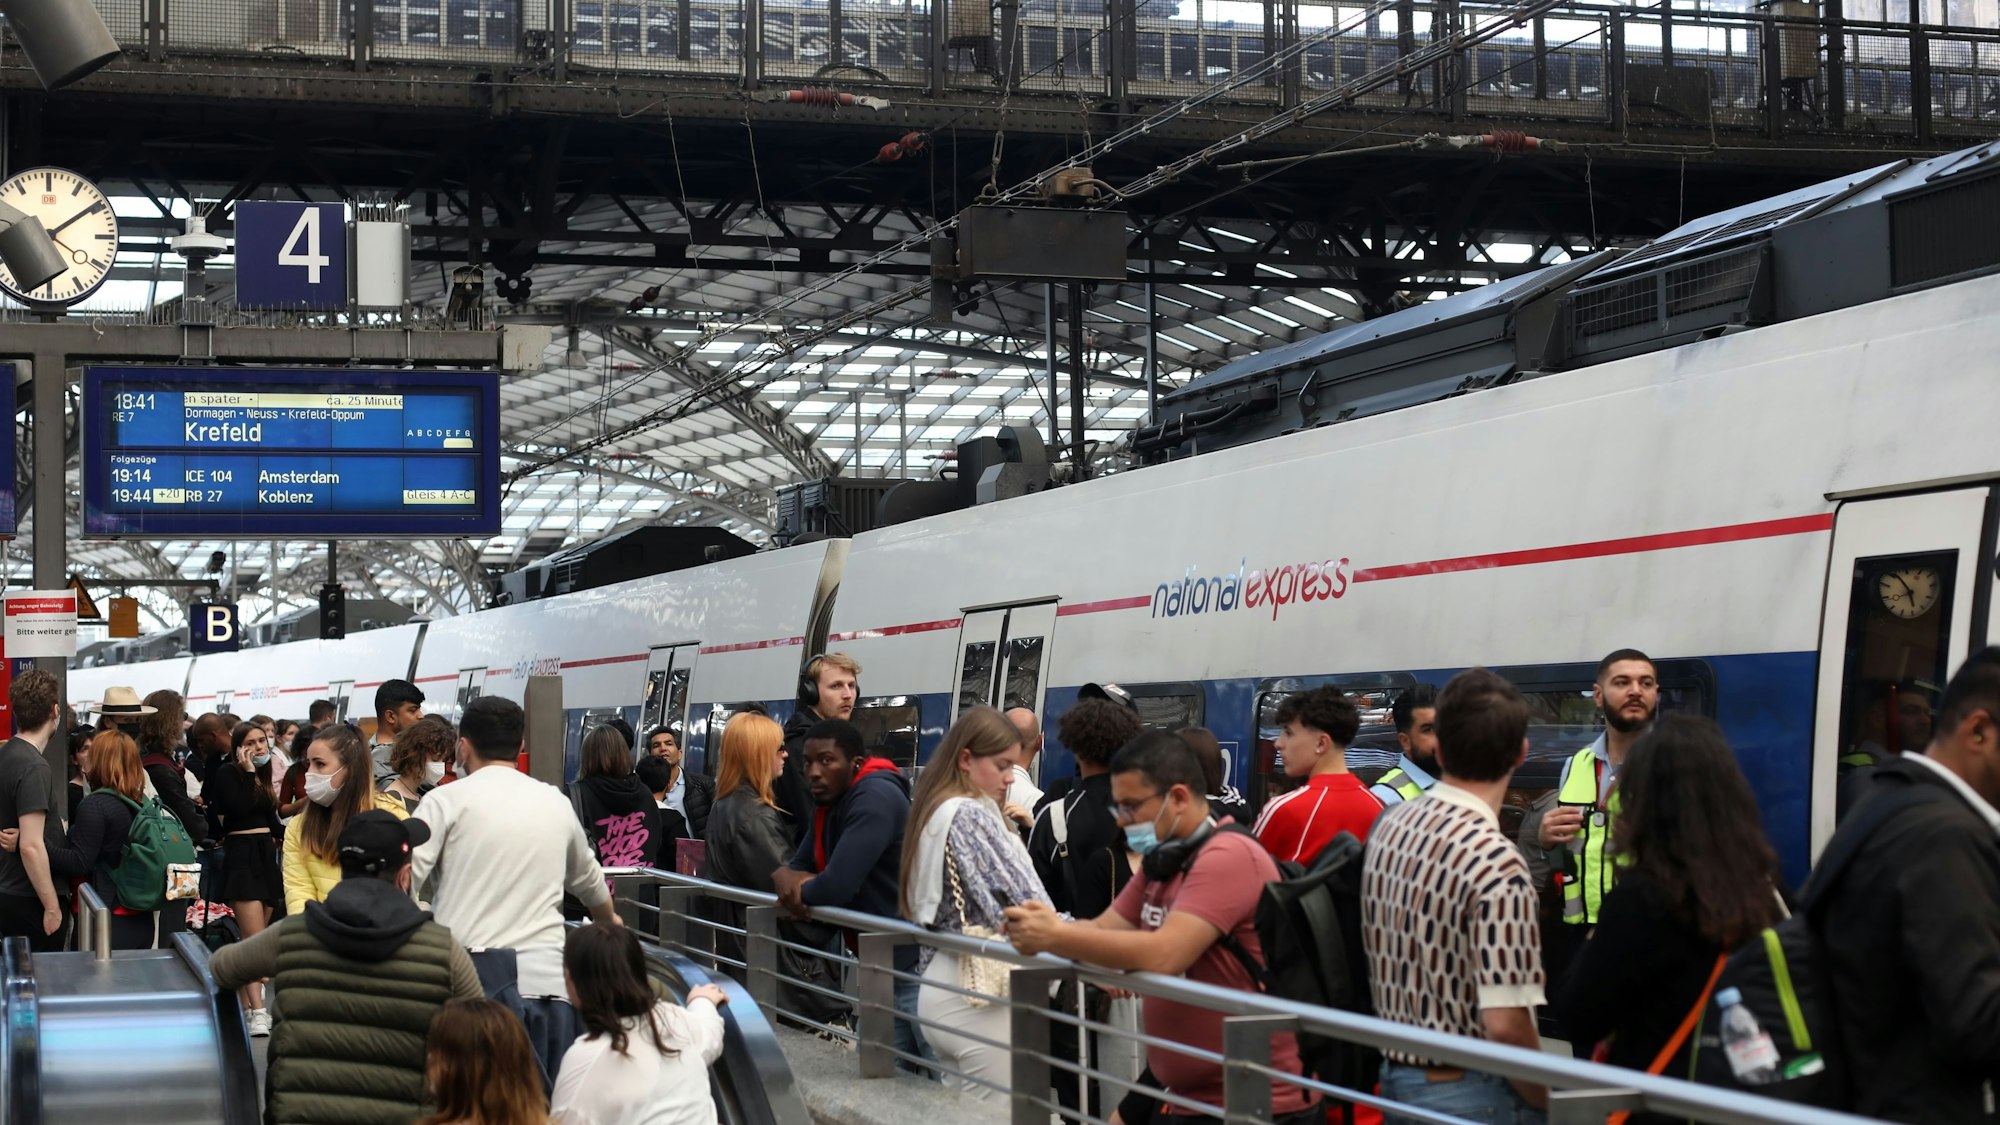 Fahrgäste warten auf ihre Zugverbindung auf Gleis 4. Ein Zug von Nation Express fährt gerade am Hauptbahnhof ein. Das 9-Euro-Ticket gilt auch für National Express Verbindungen.